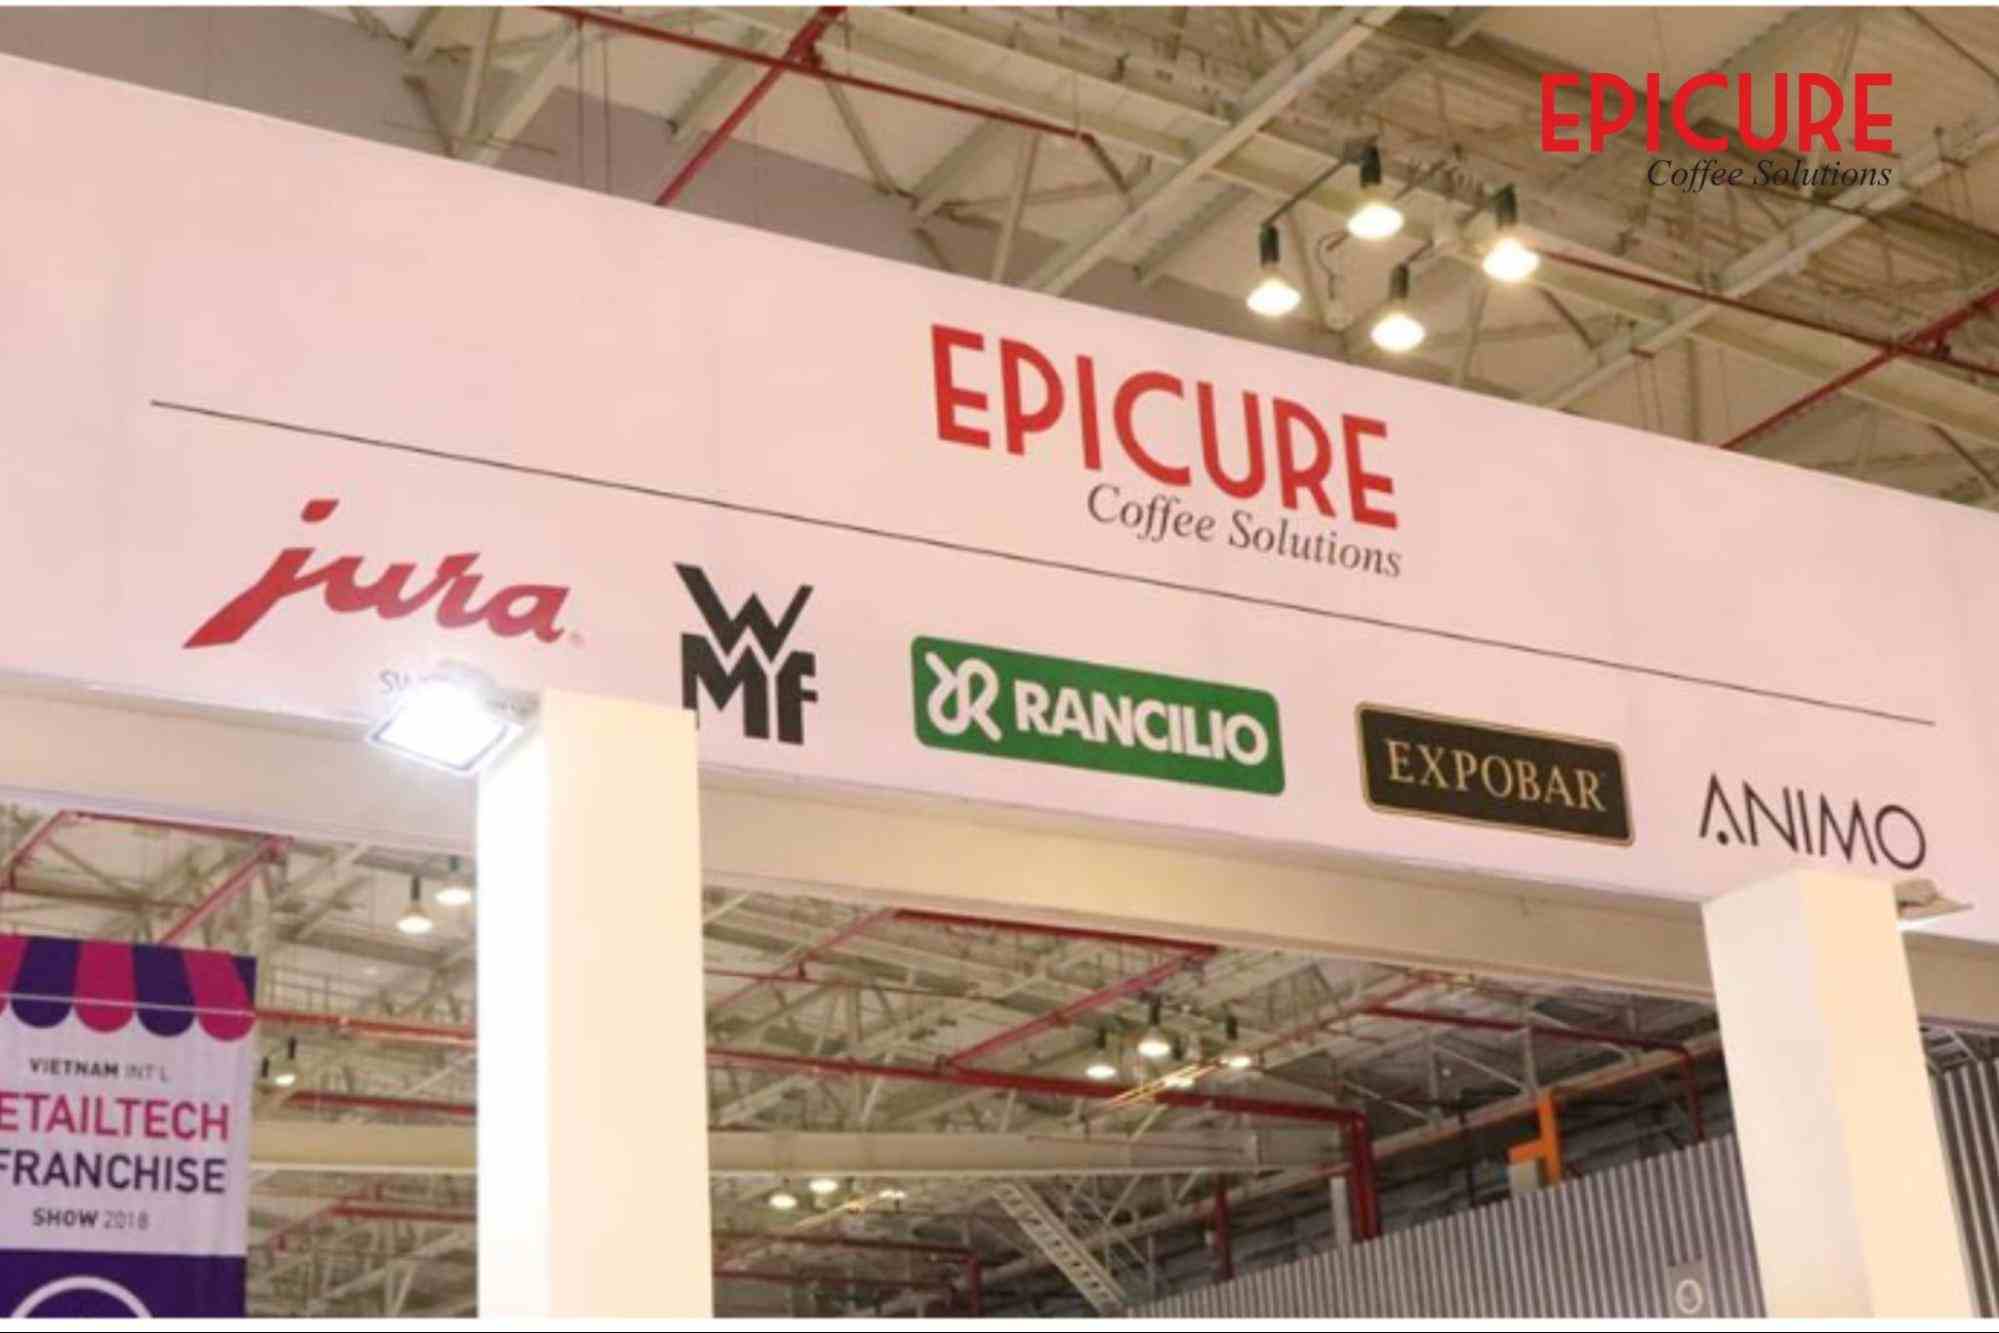 Epicure Vina - Đơn vị phân phối các dòng máy pha cà phê Americano chính hãng